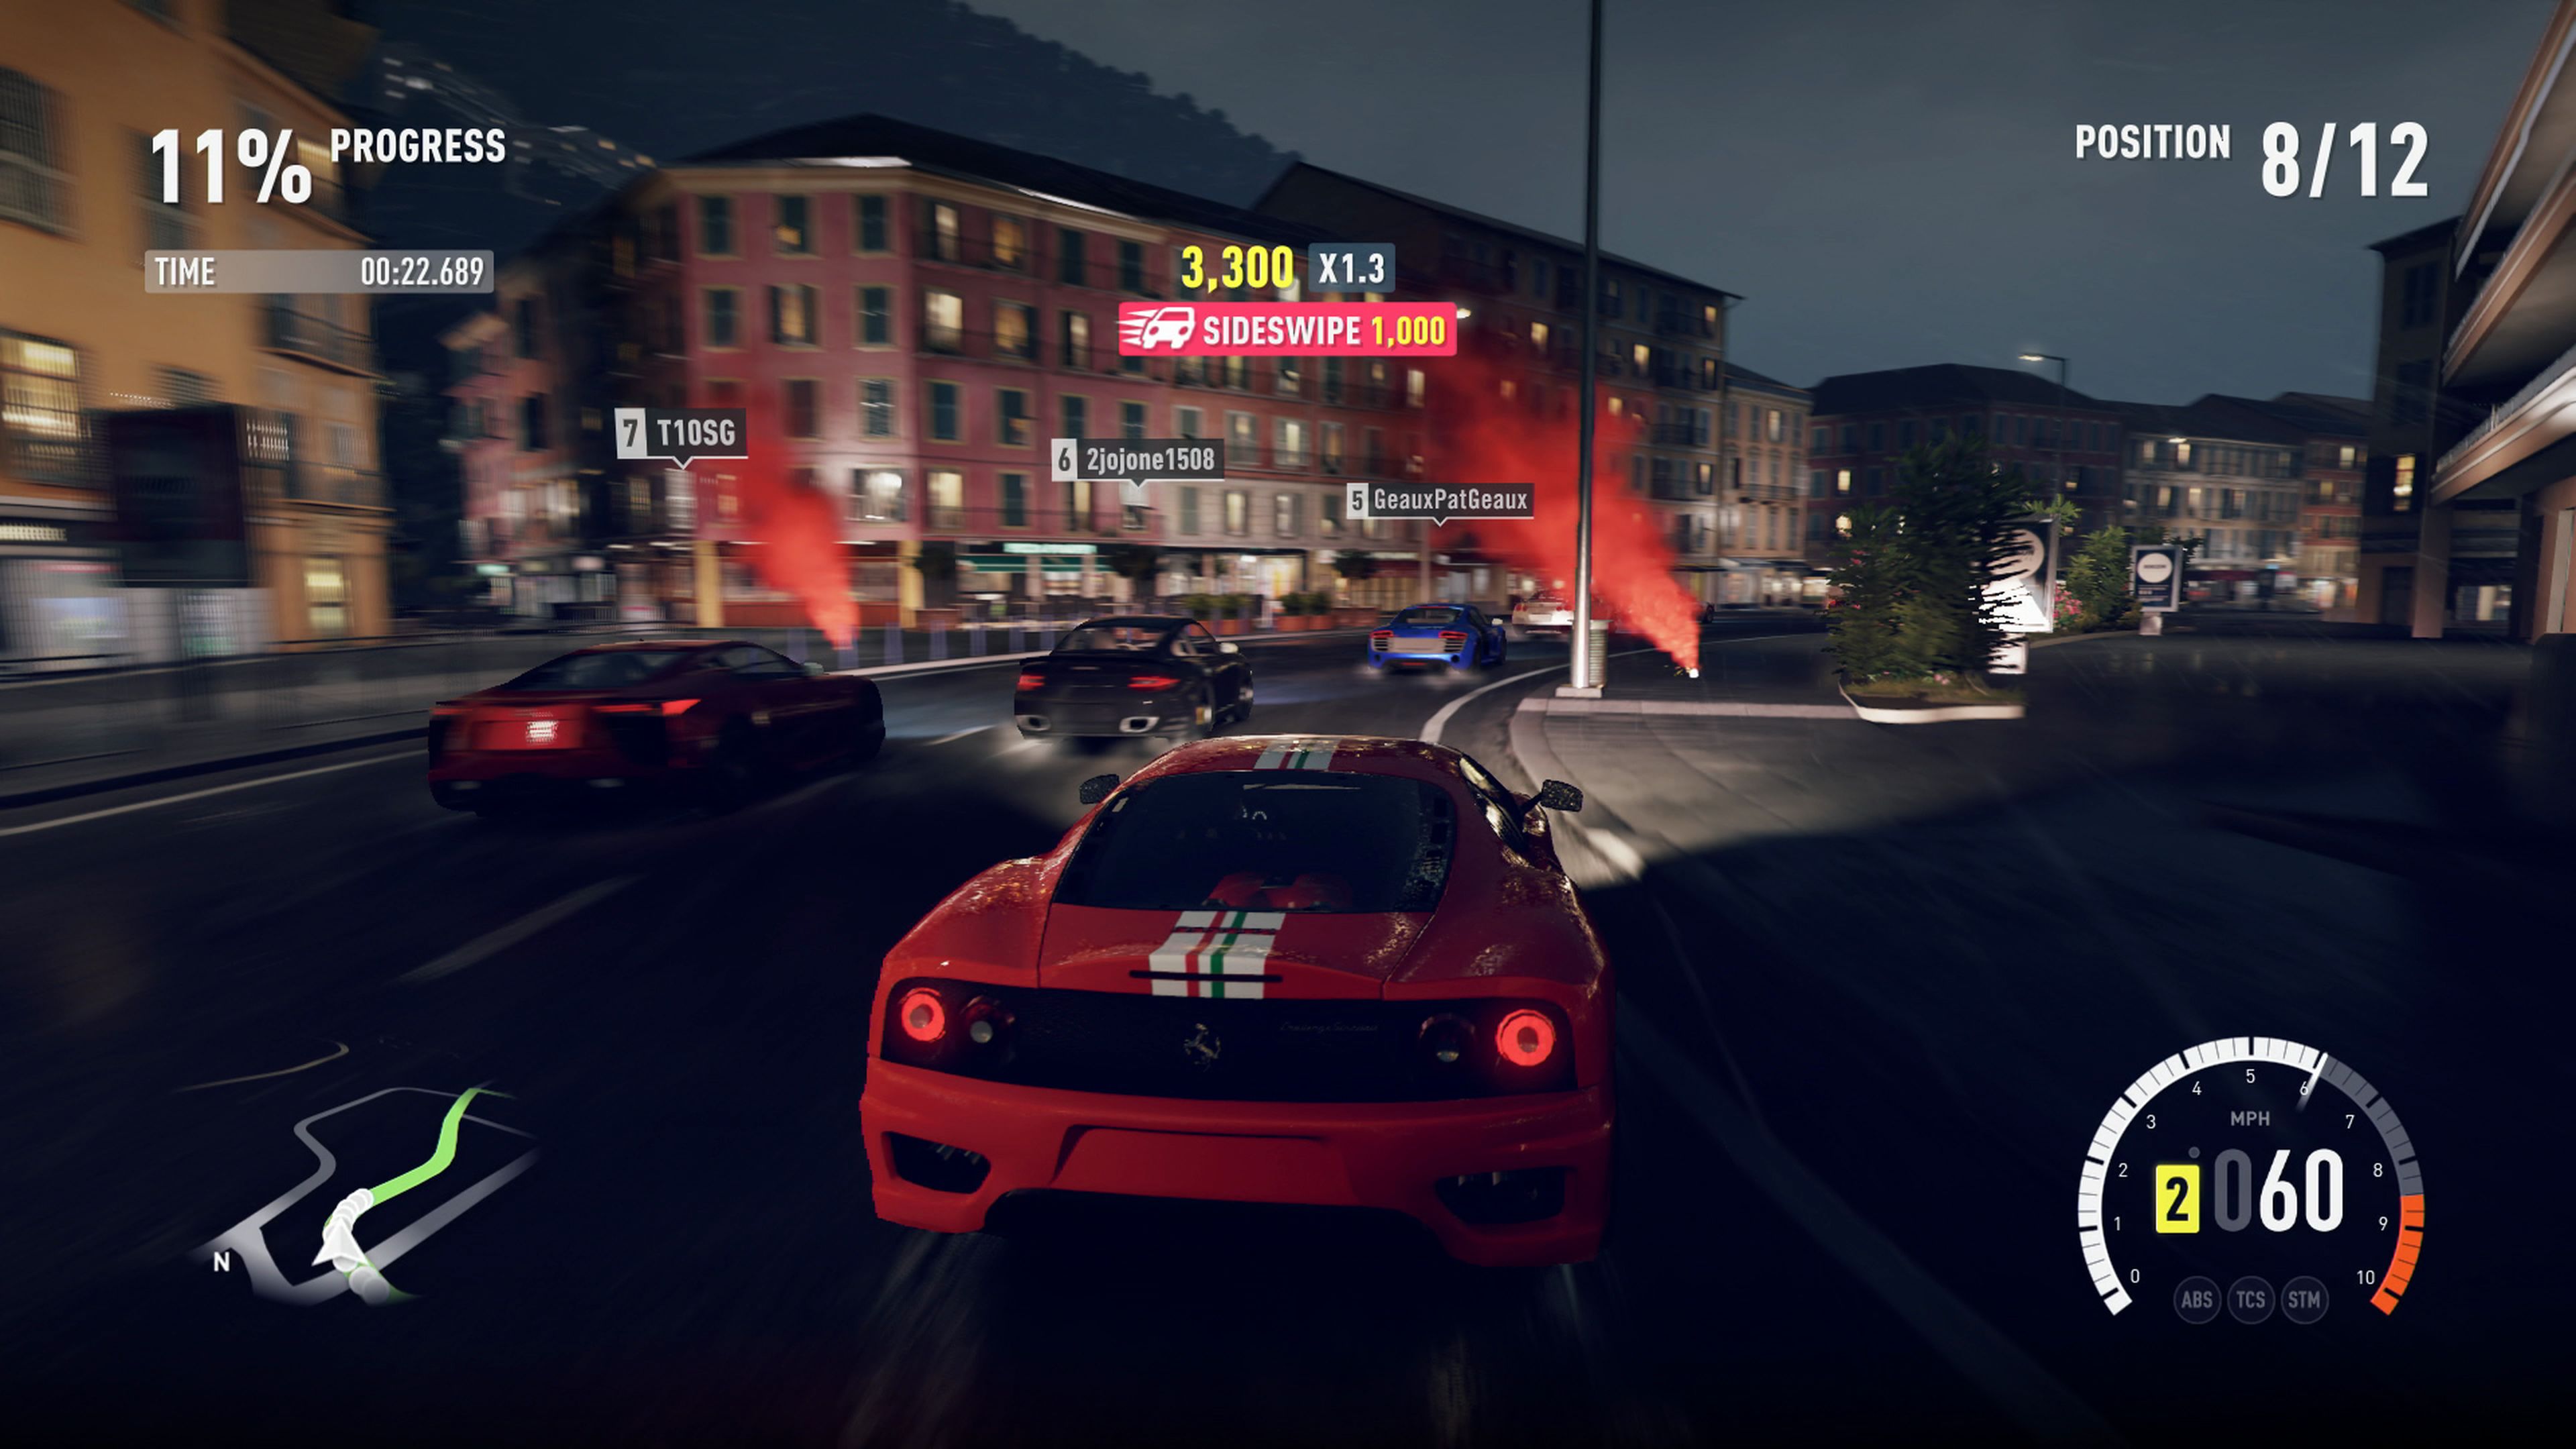 Forza Horizon, análisis y opiniones del juego para Xbox 360